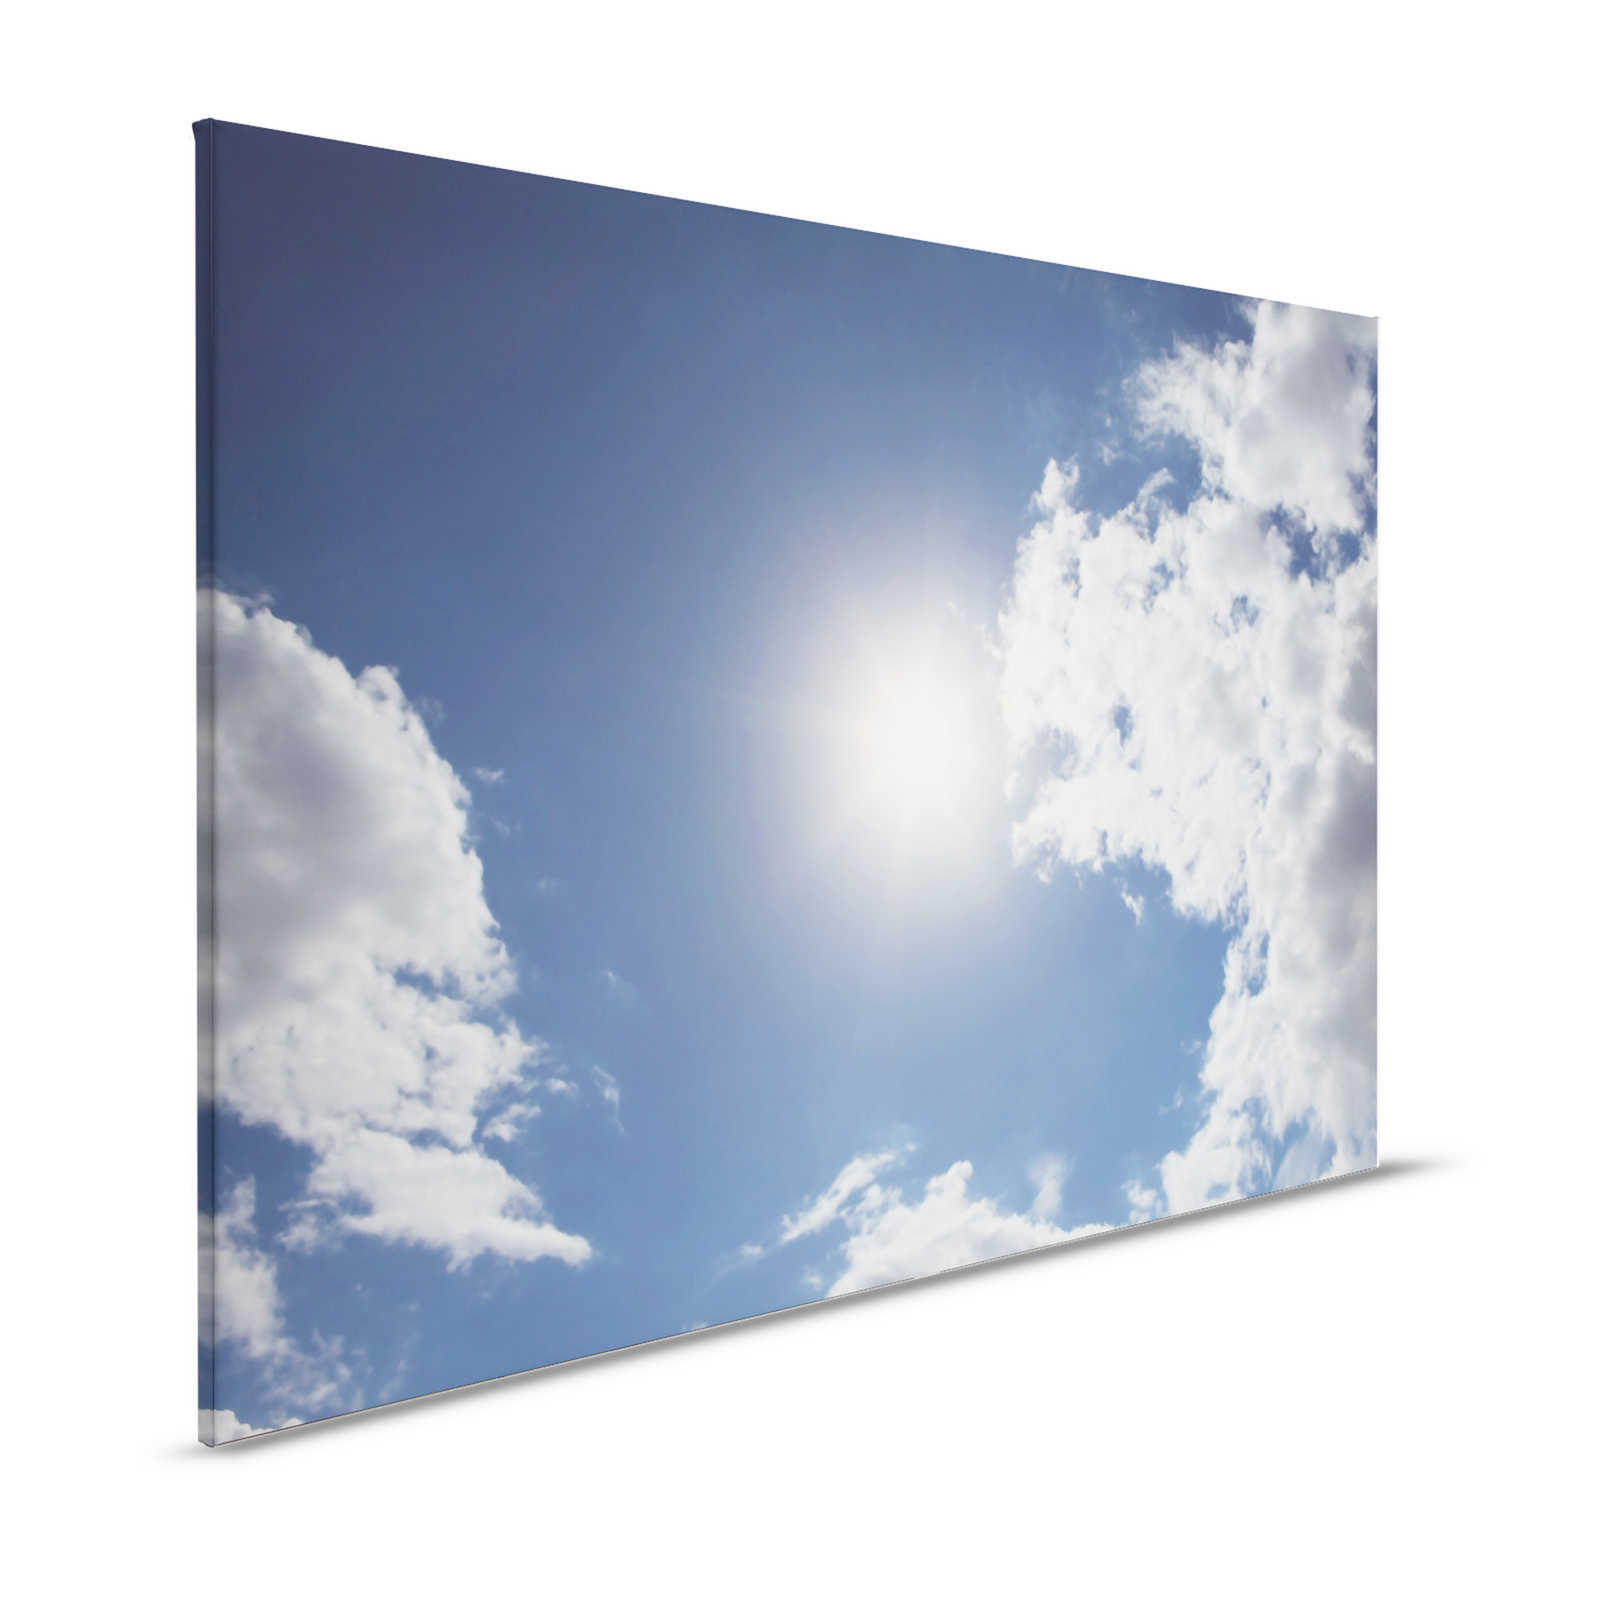 Himmel blau - Leinwandbild Sonnenschein & blauem Wolkenhimmel – 1,20 m x 0,80 m
